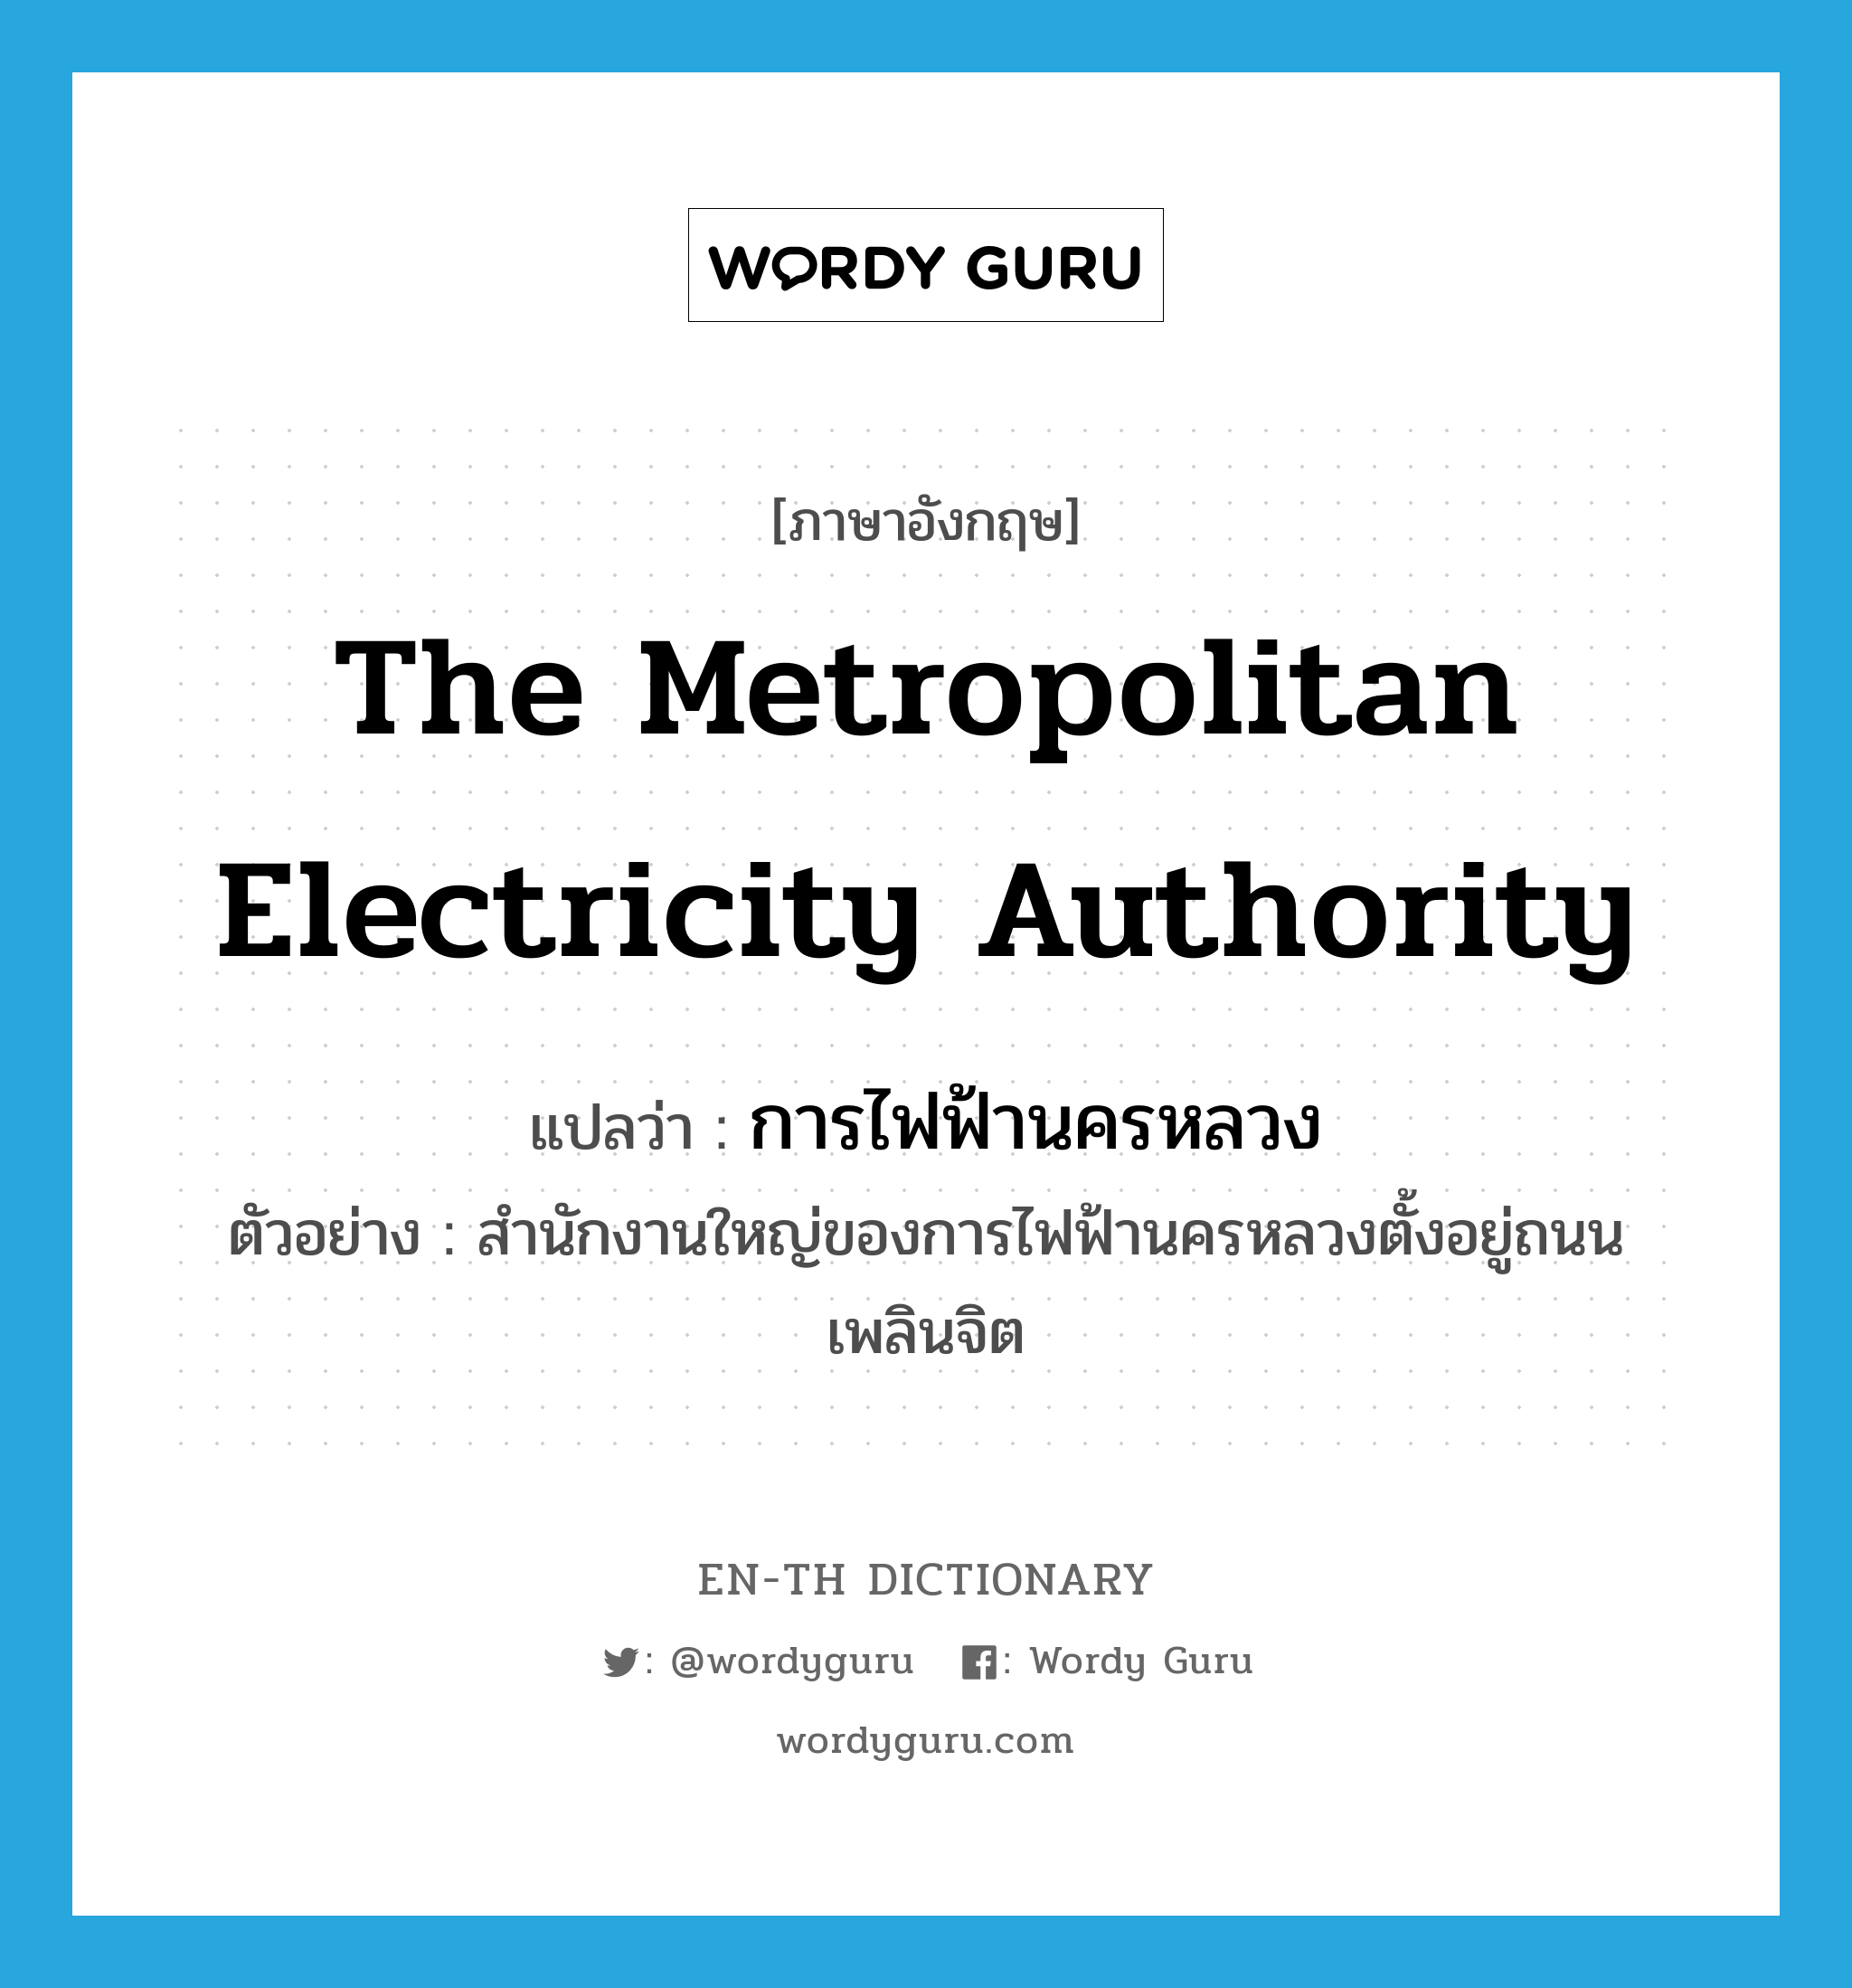 การไฟฟ้านครหลวง ภาษาอังกฤษ?, คำศัพท์ภาษาอังกฤษ การไฟฟ้านครหลวง แปลว่า The Metropolitan Electricity Authority ประเภท N ตัวอย่าง สำนักงานใหญ่ของการไฟฟ้านครหลวงตั้งอยู่ถนนเพลินจิต หมวด N